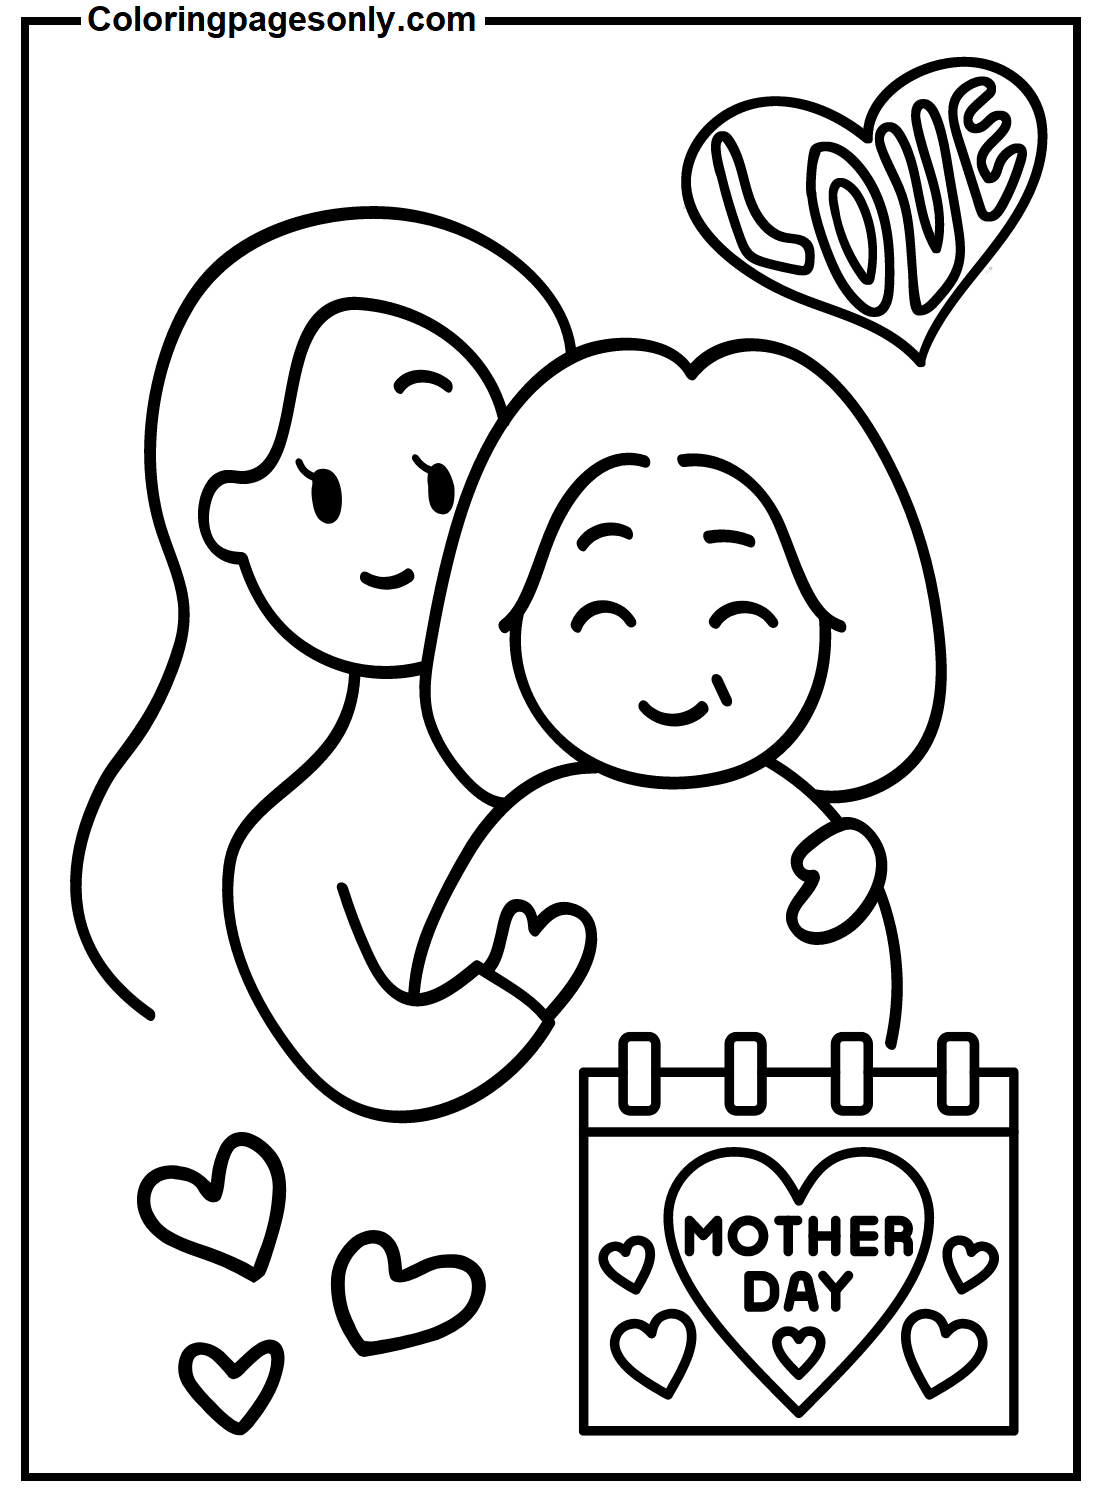 Люблю маму – День матери из сериала «Я люблю маму»